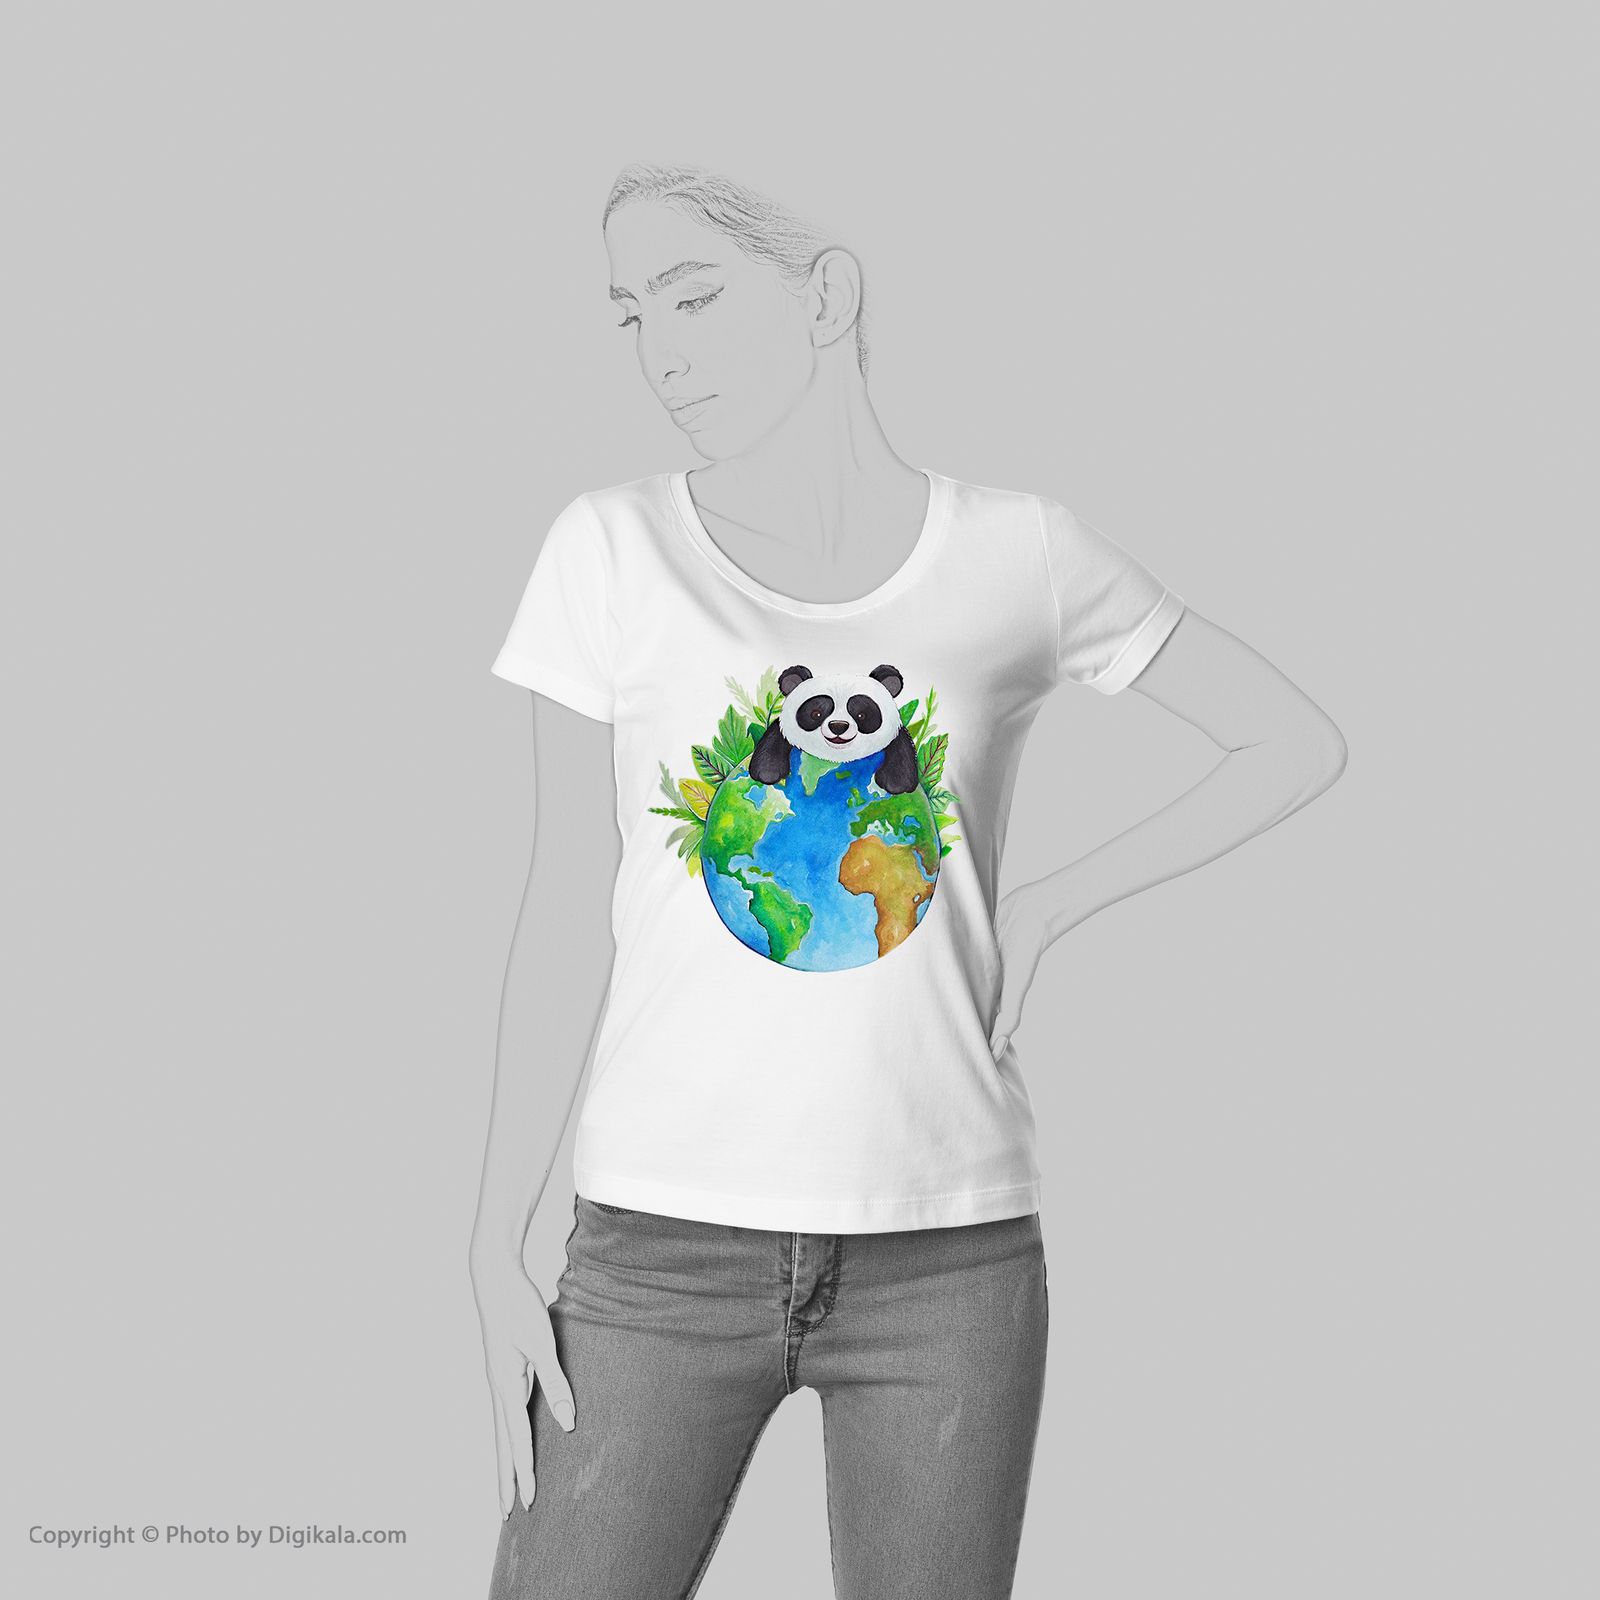 تی شرت آستین کوتاه شین دیزاین طرح پاندا کد 4451 -  - 2